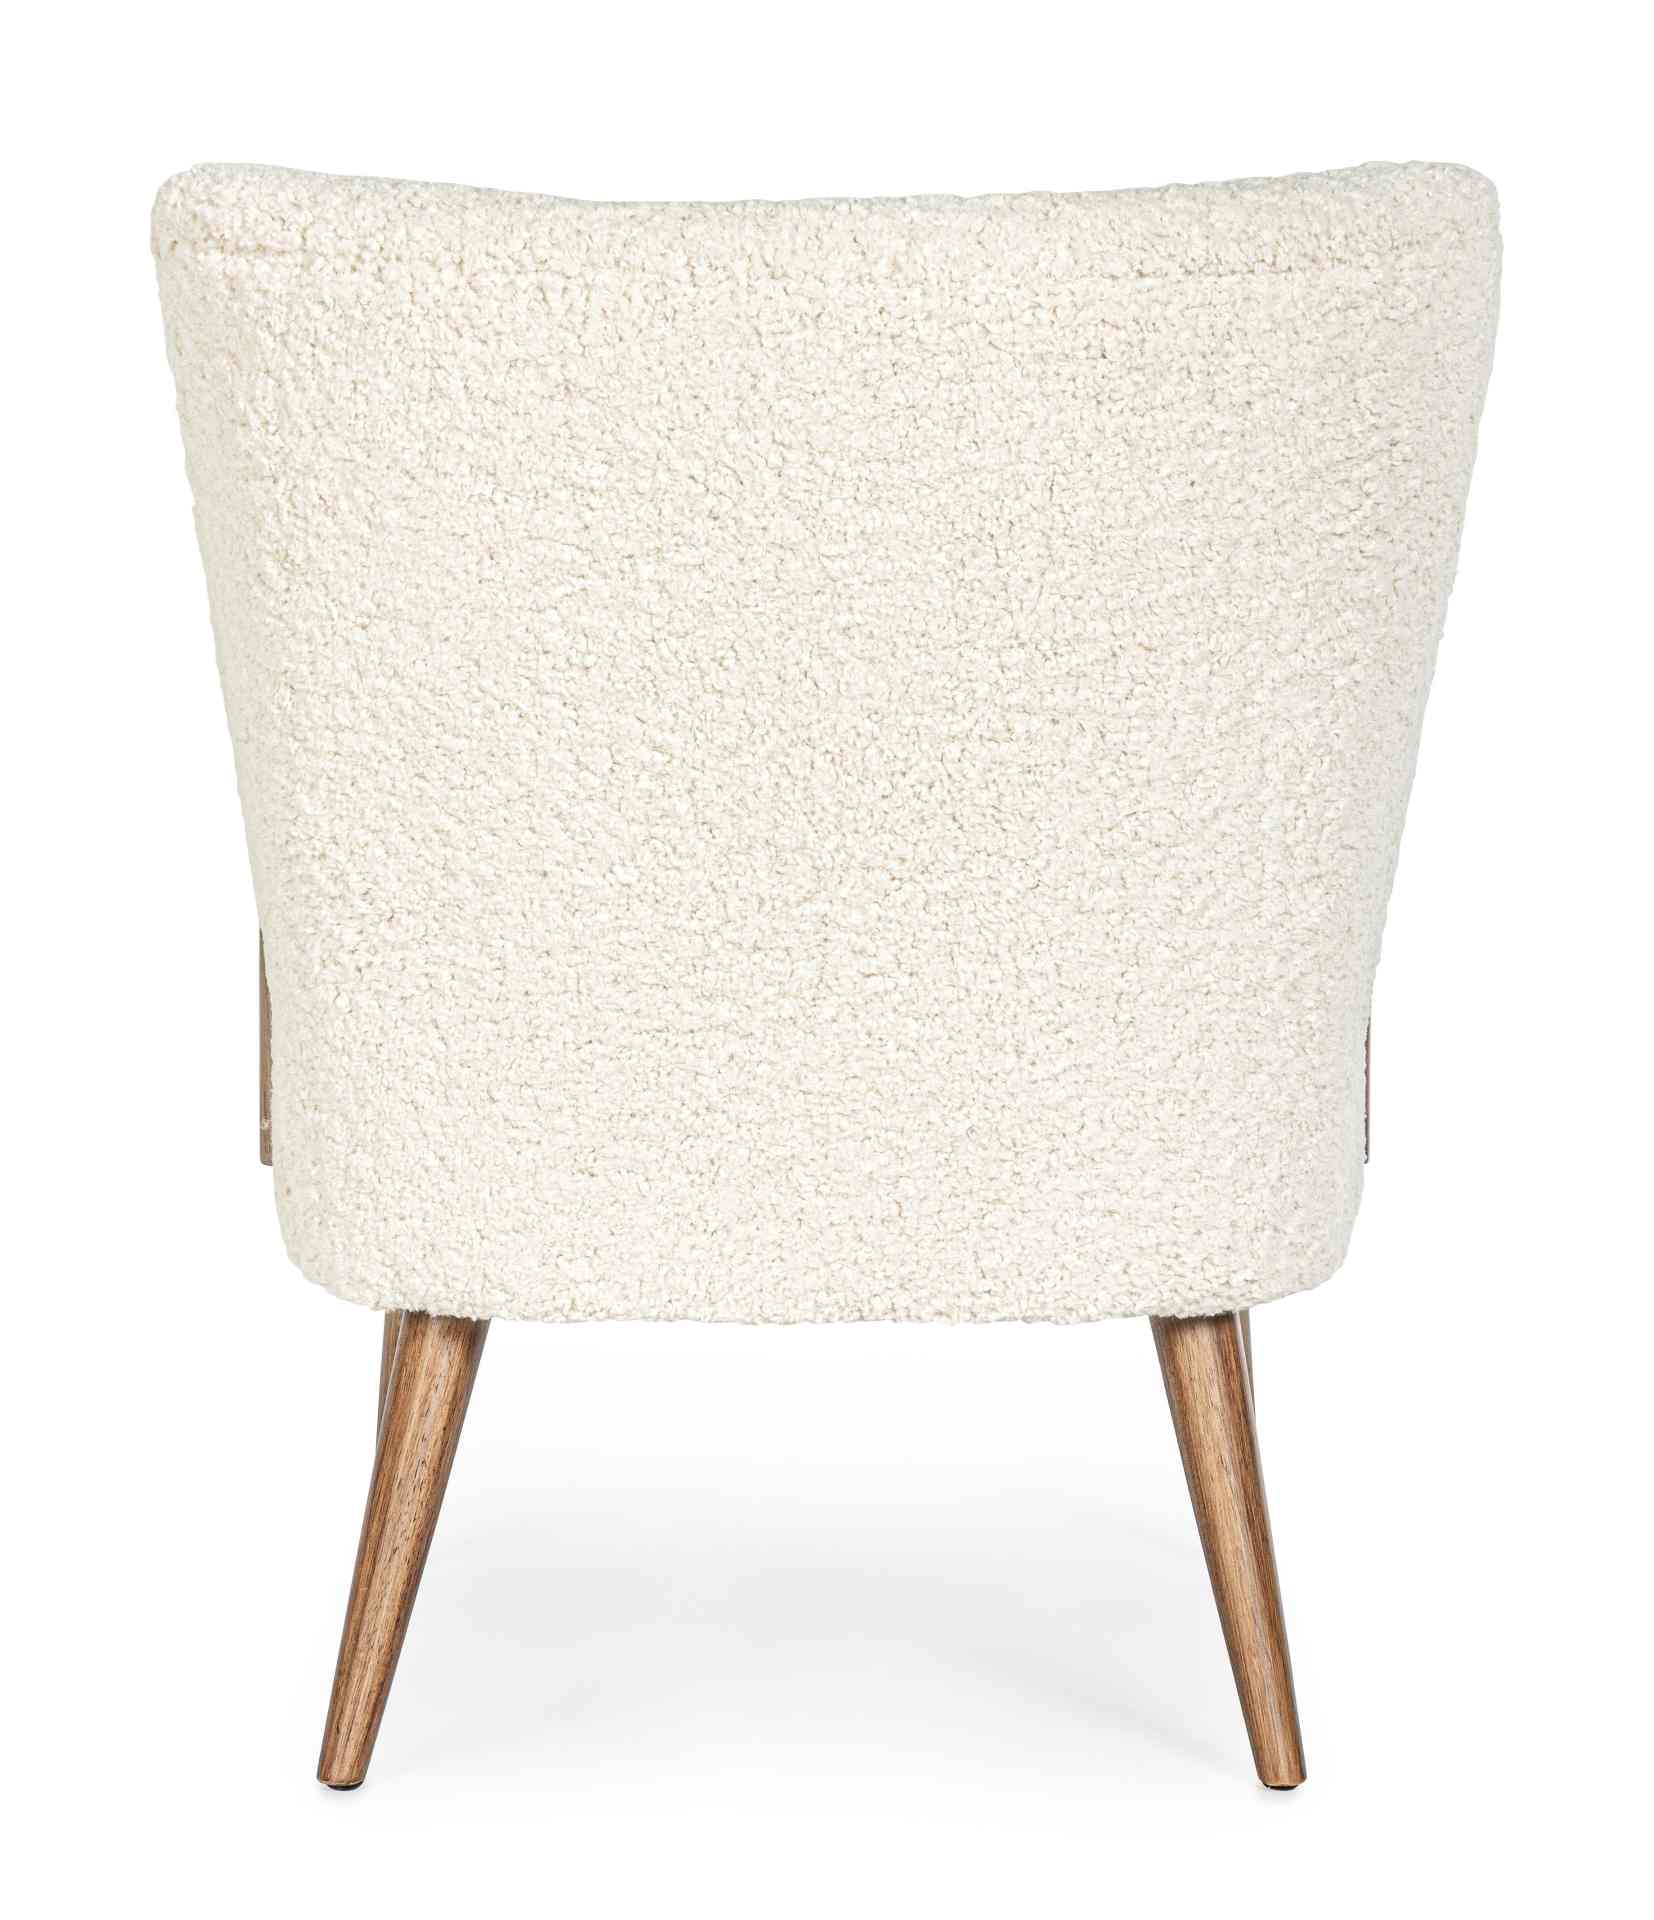 Der Sessel Moritz überzeugt mit seinem modernen Design. Gefertigt wurde er aus Stoff in Teddy-Optik, welcher einen weißen Farbton besitzt. Das Gestell ist aus Kautschukholz und hat eine natürliche Farbe. Der Sessel besitzt eine Sitzhöhe von 45 cm. Die Bre